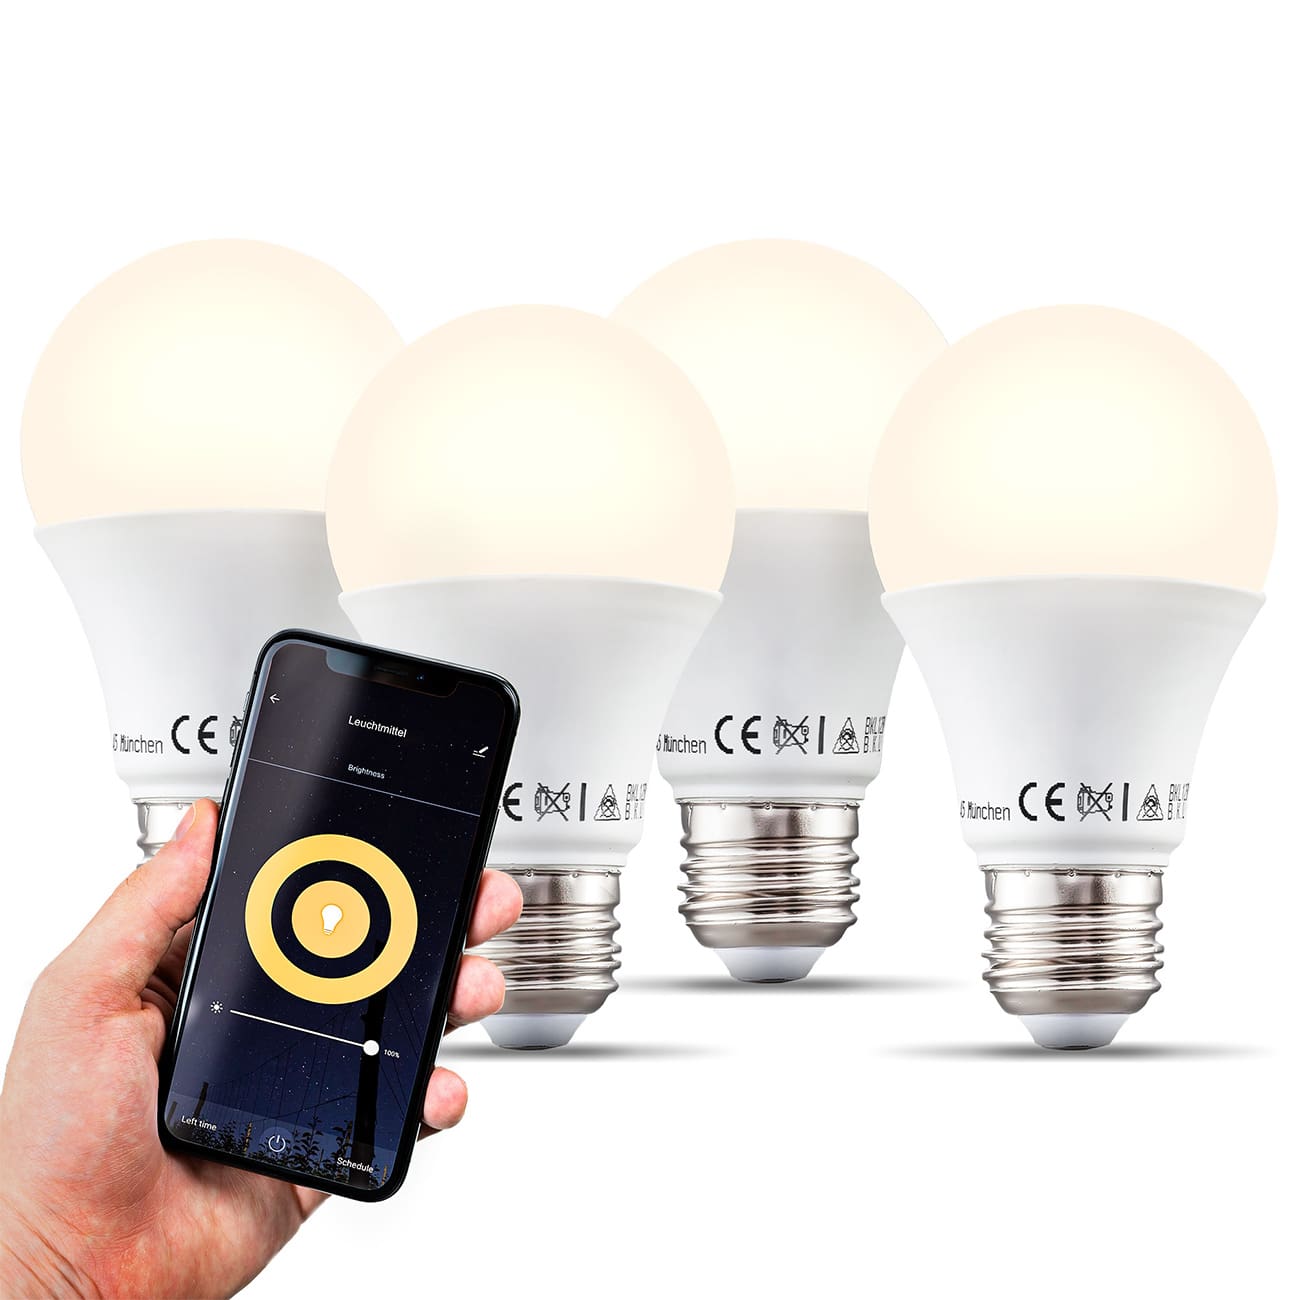 Smartes LED Leuchtmittel E27 dimmbar - 4er Set - Energiespar-Lampe  112x60mm WIFI IOS und Android Tropfenform 9W 806lm 2.700K warmweißes Licht | weiß - 3